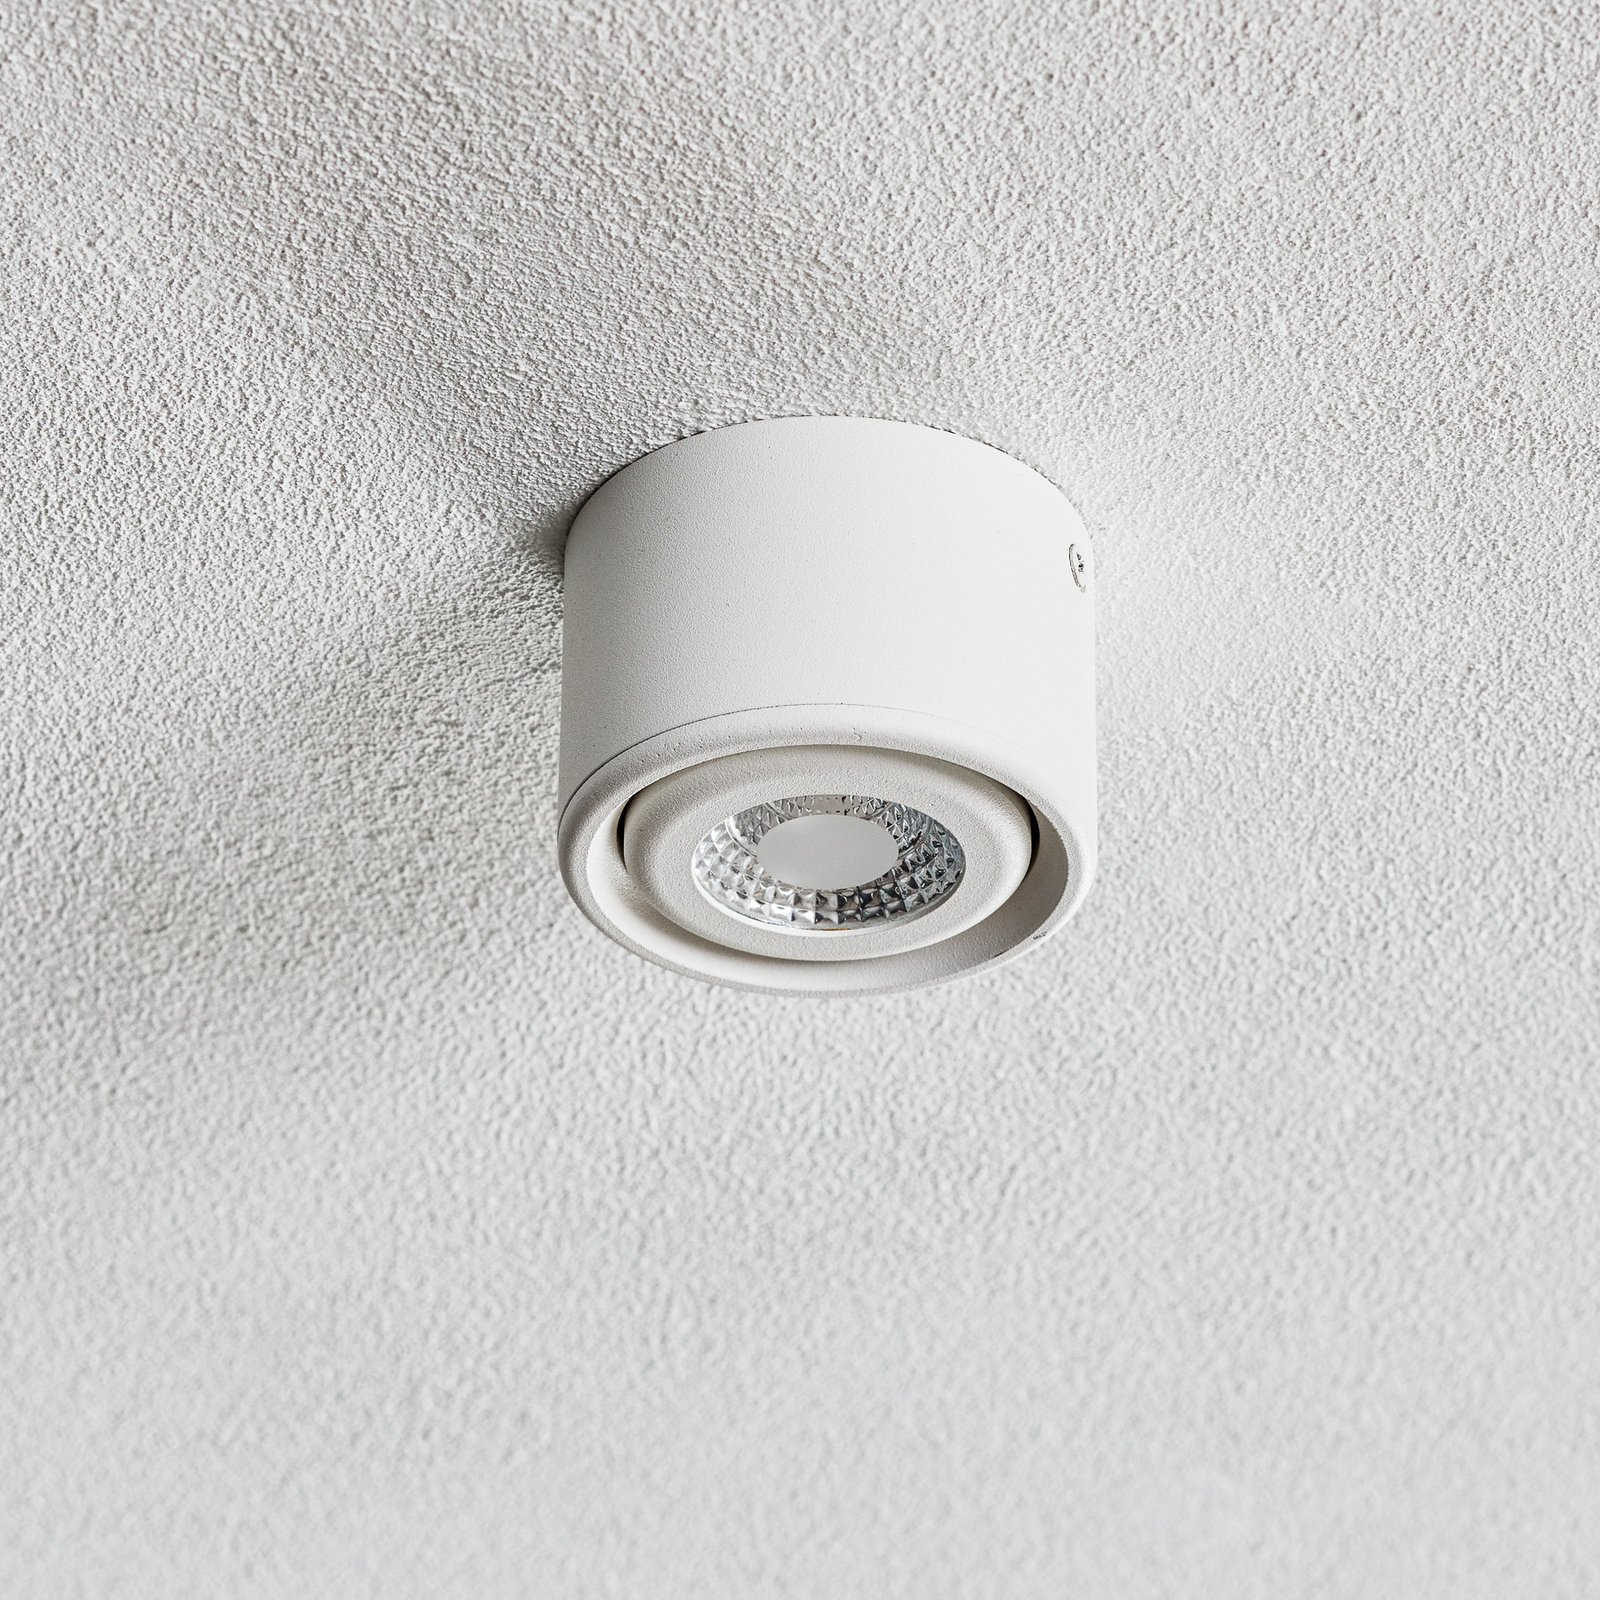 Odchylana głowica – downlight LED Anzio, biały